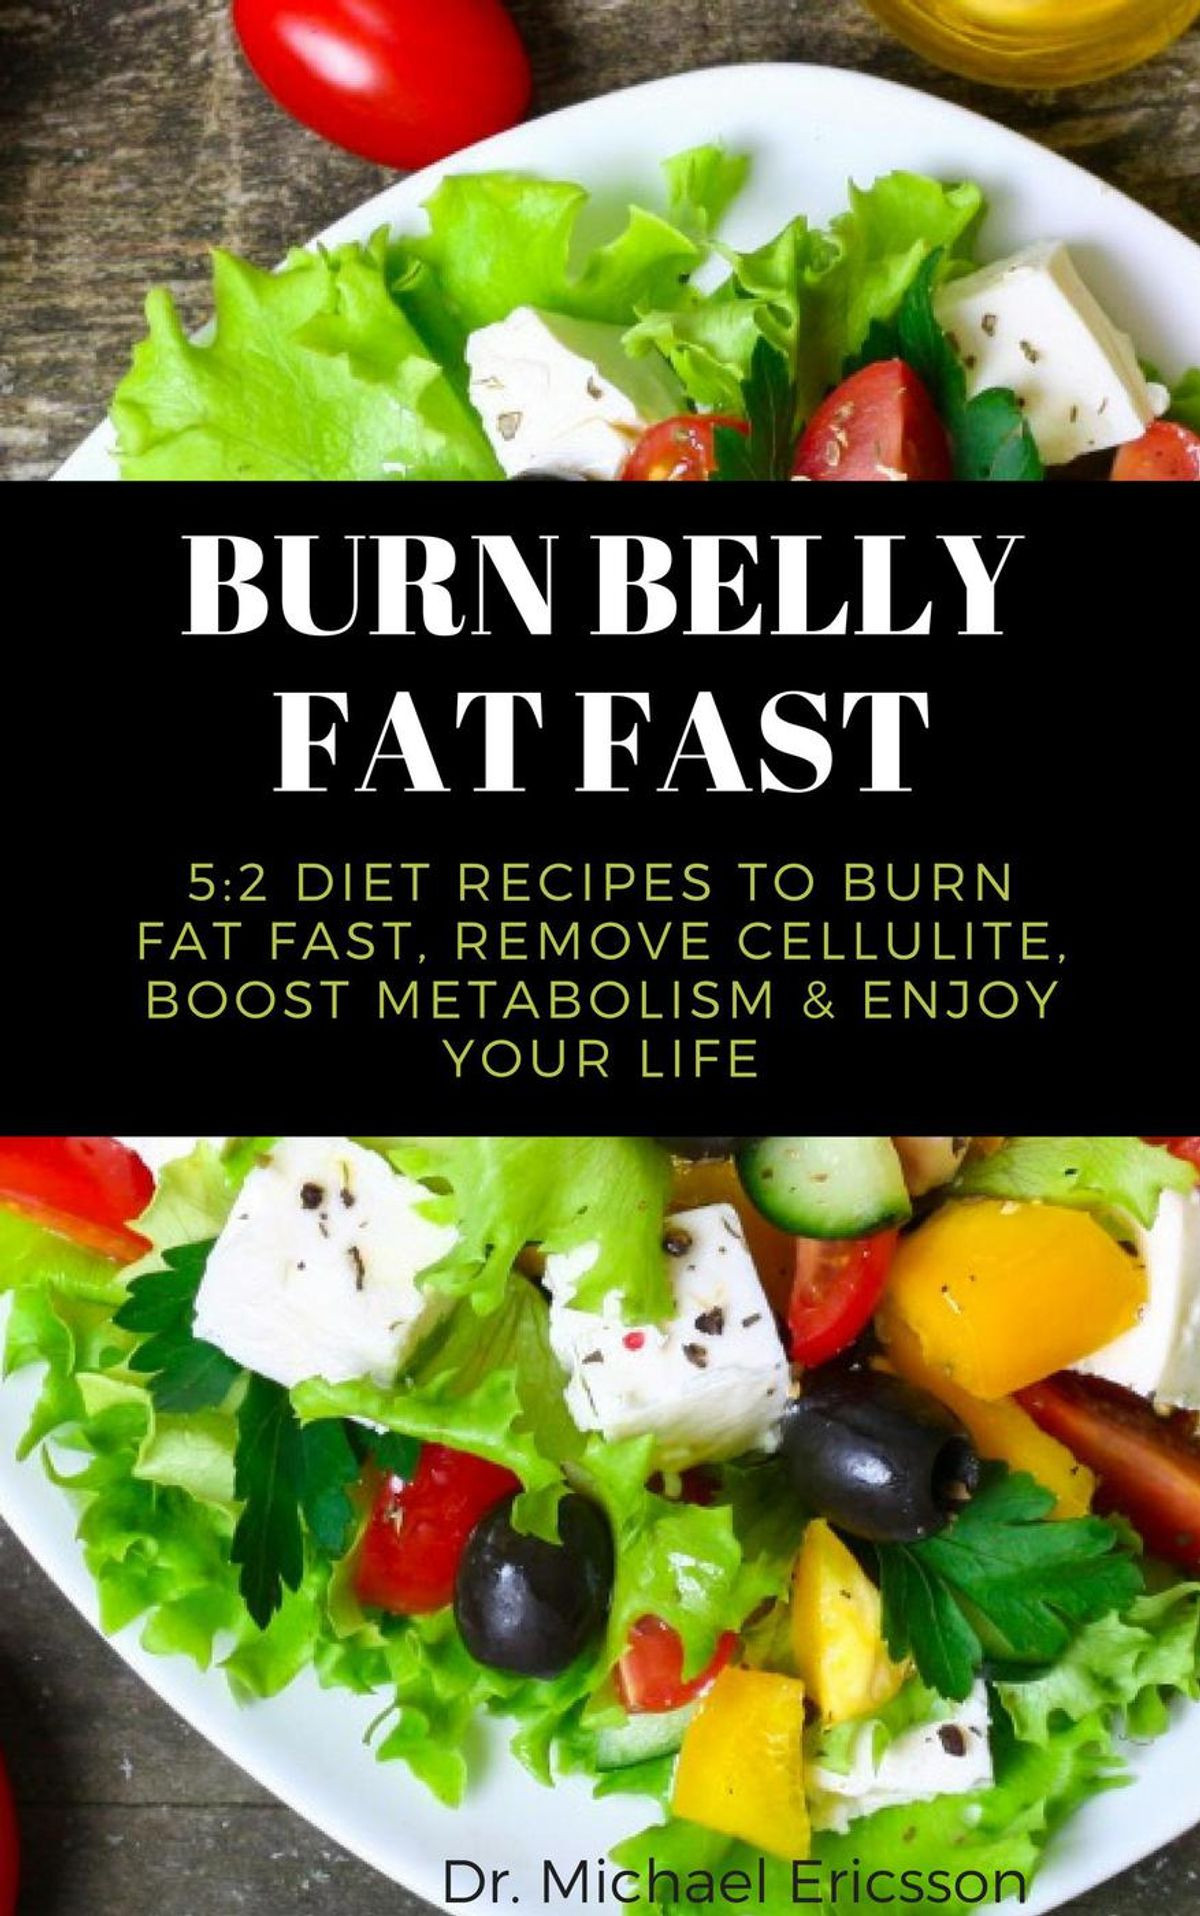 Burn Belly Fat Recipes
 Burn Belly Fat Fast 5 2 Diet Recipes to Burn Fat Fast